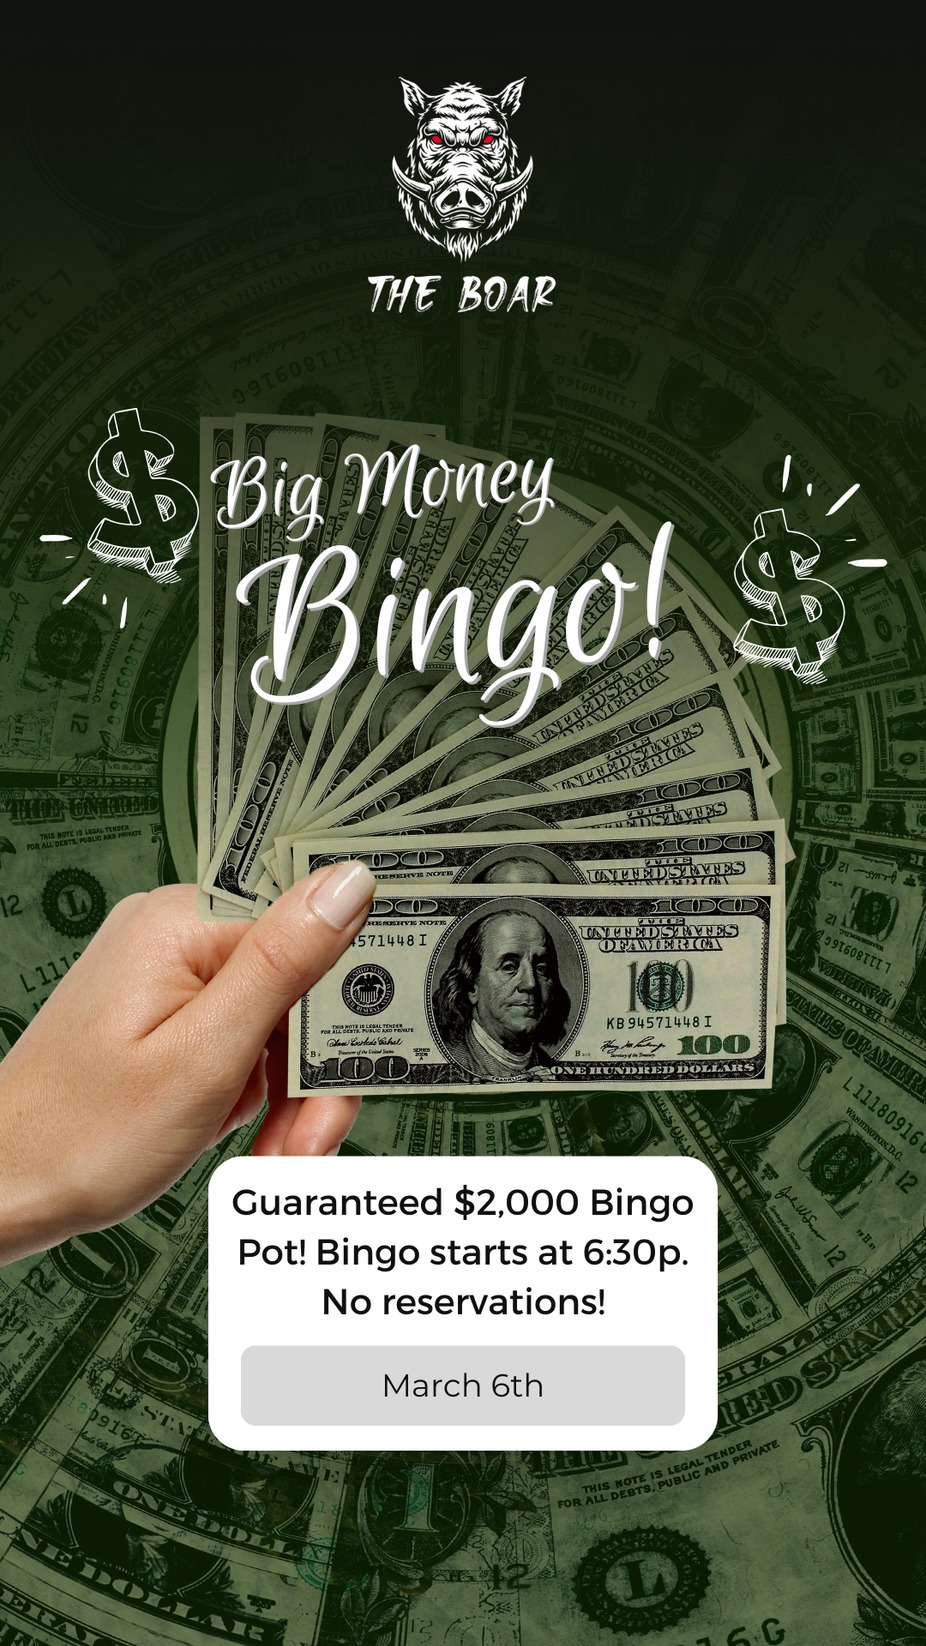 Big Money Bingo! event photo